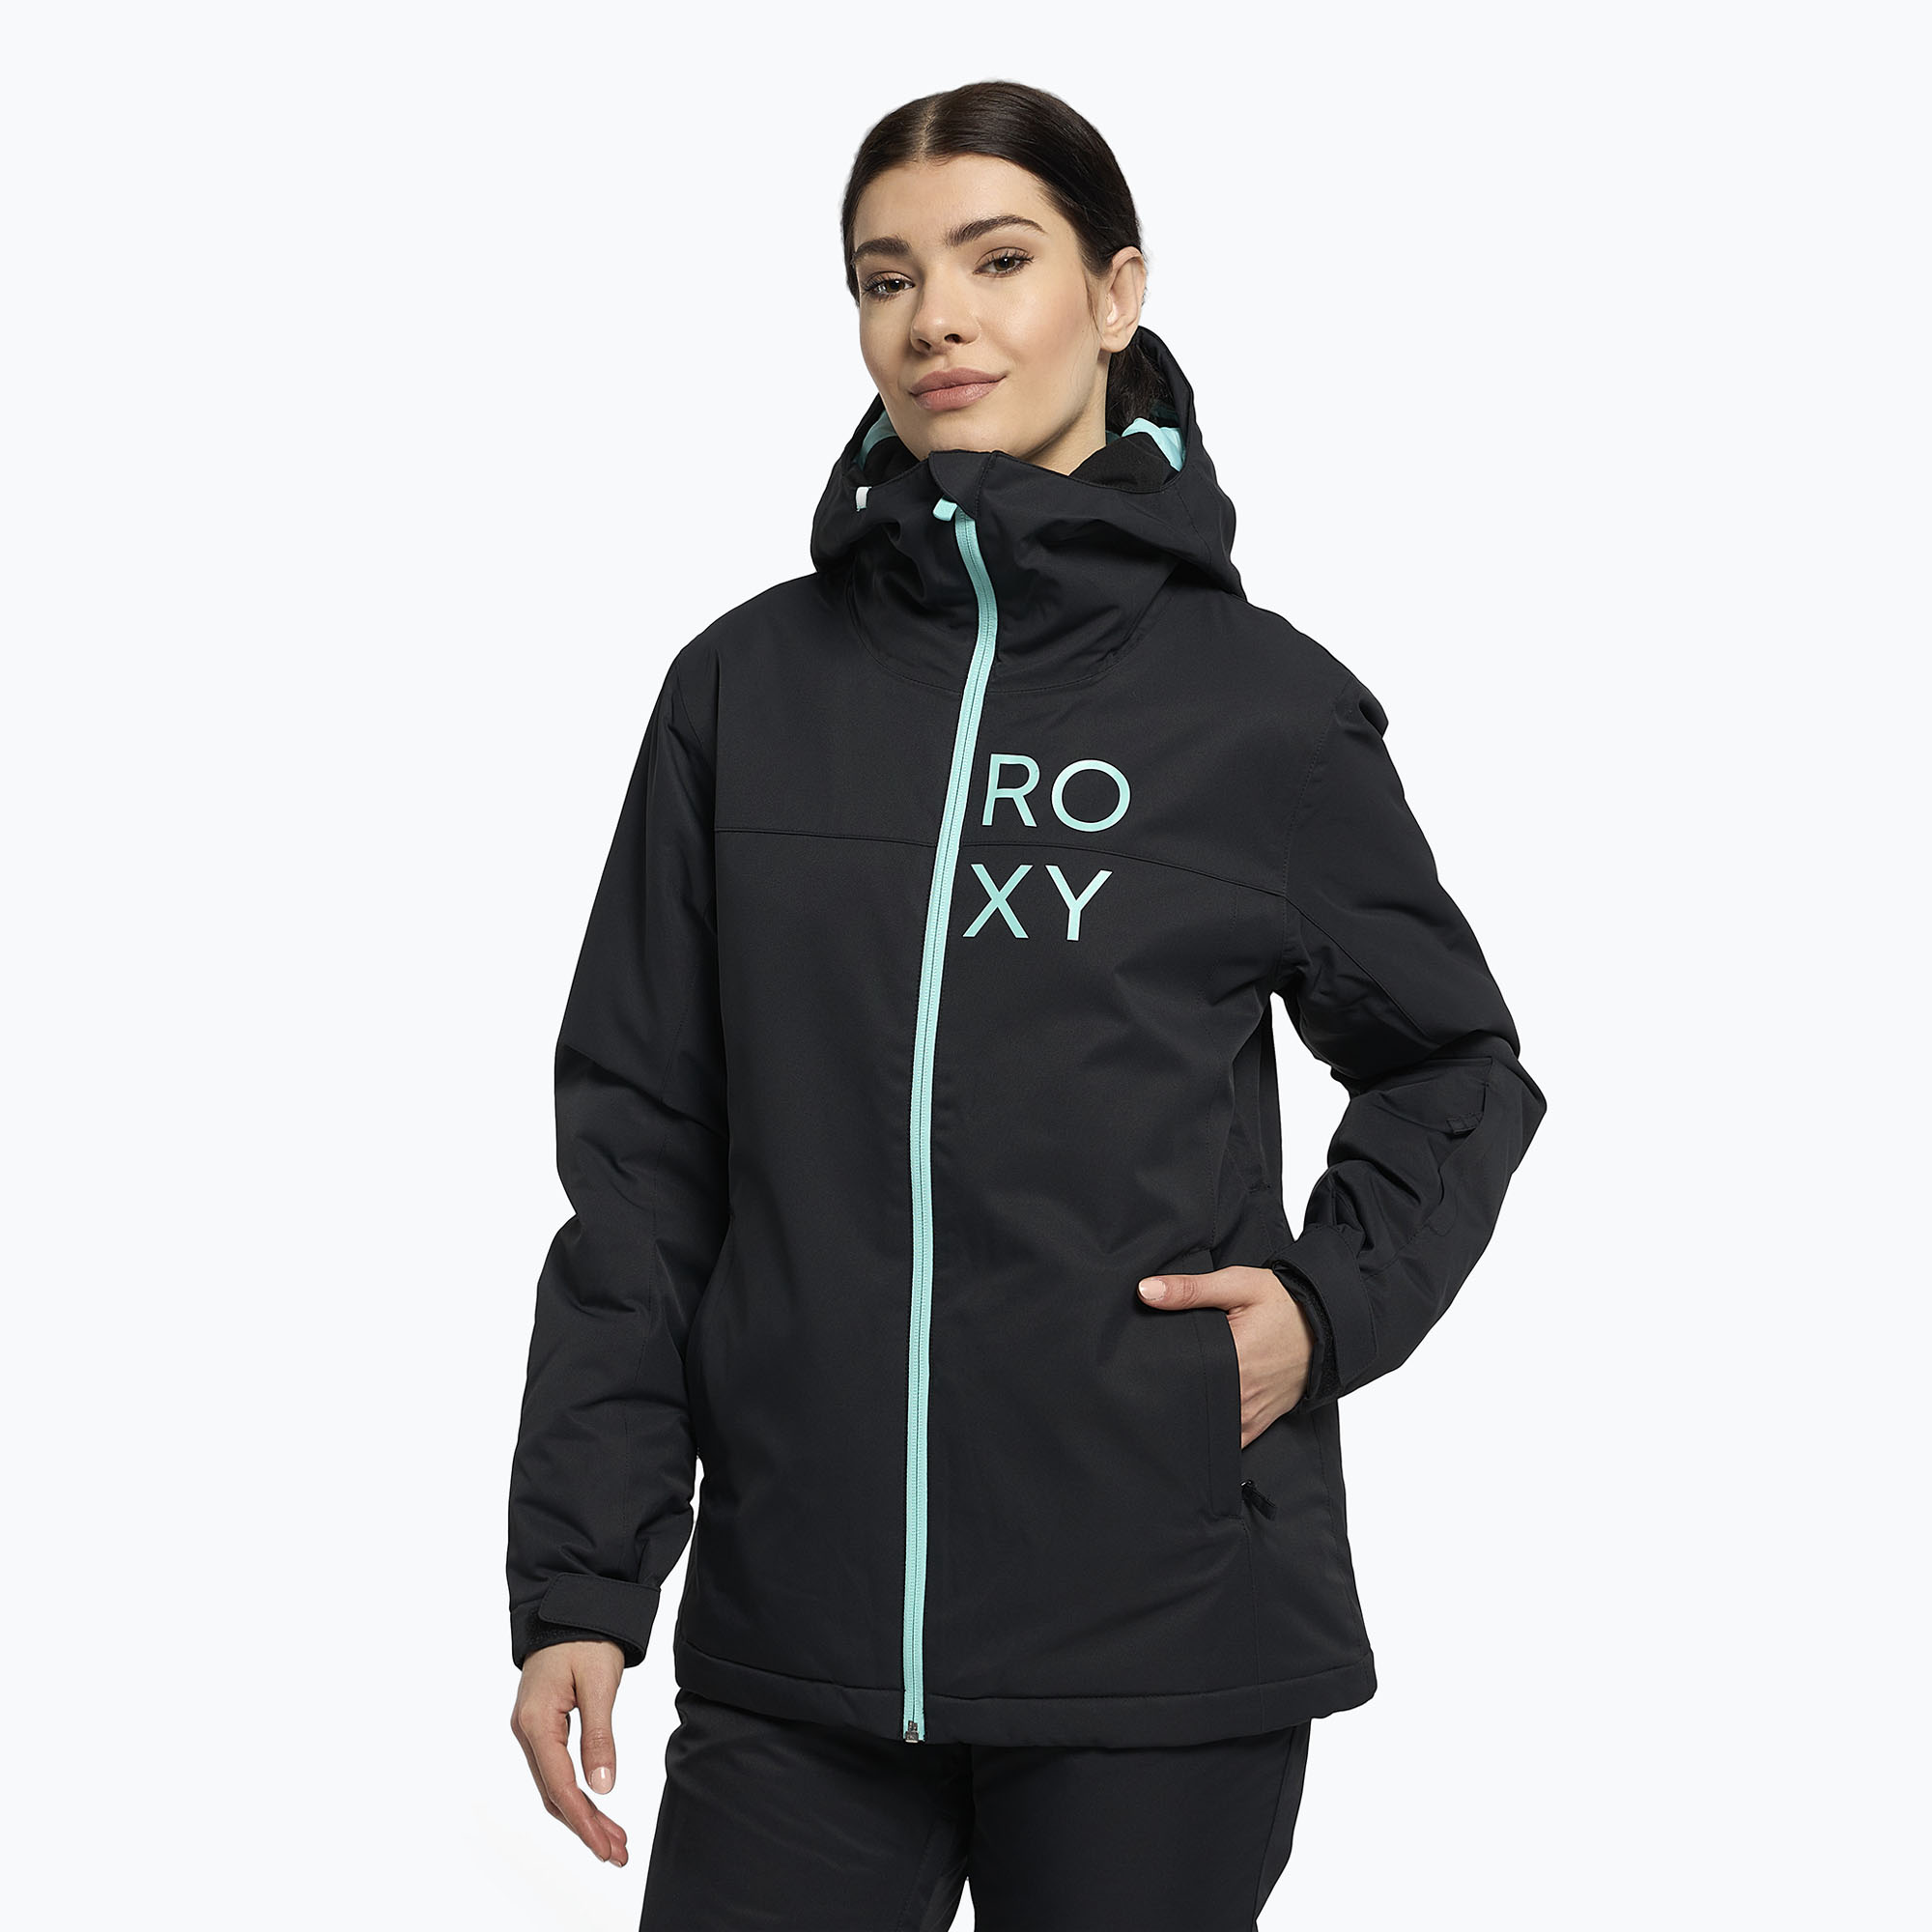 Dámska snowboardová bunda ROXY Galaxy 2021 black